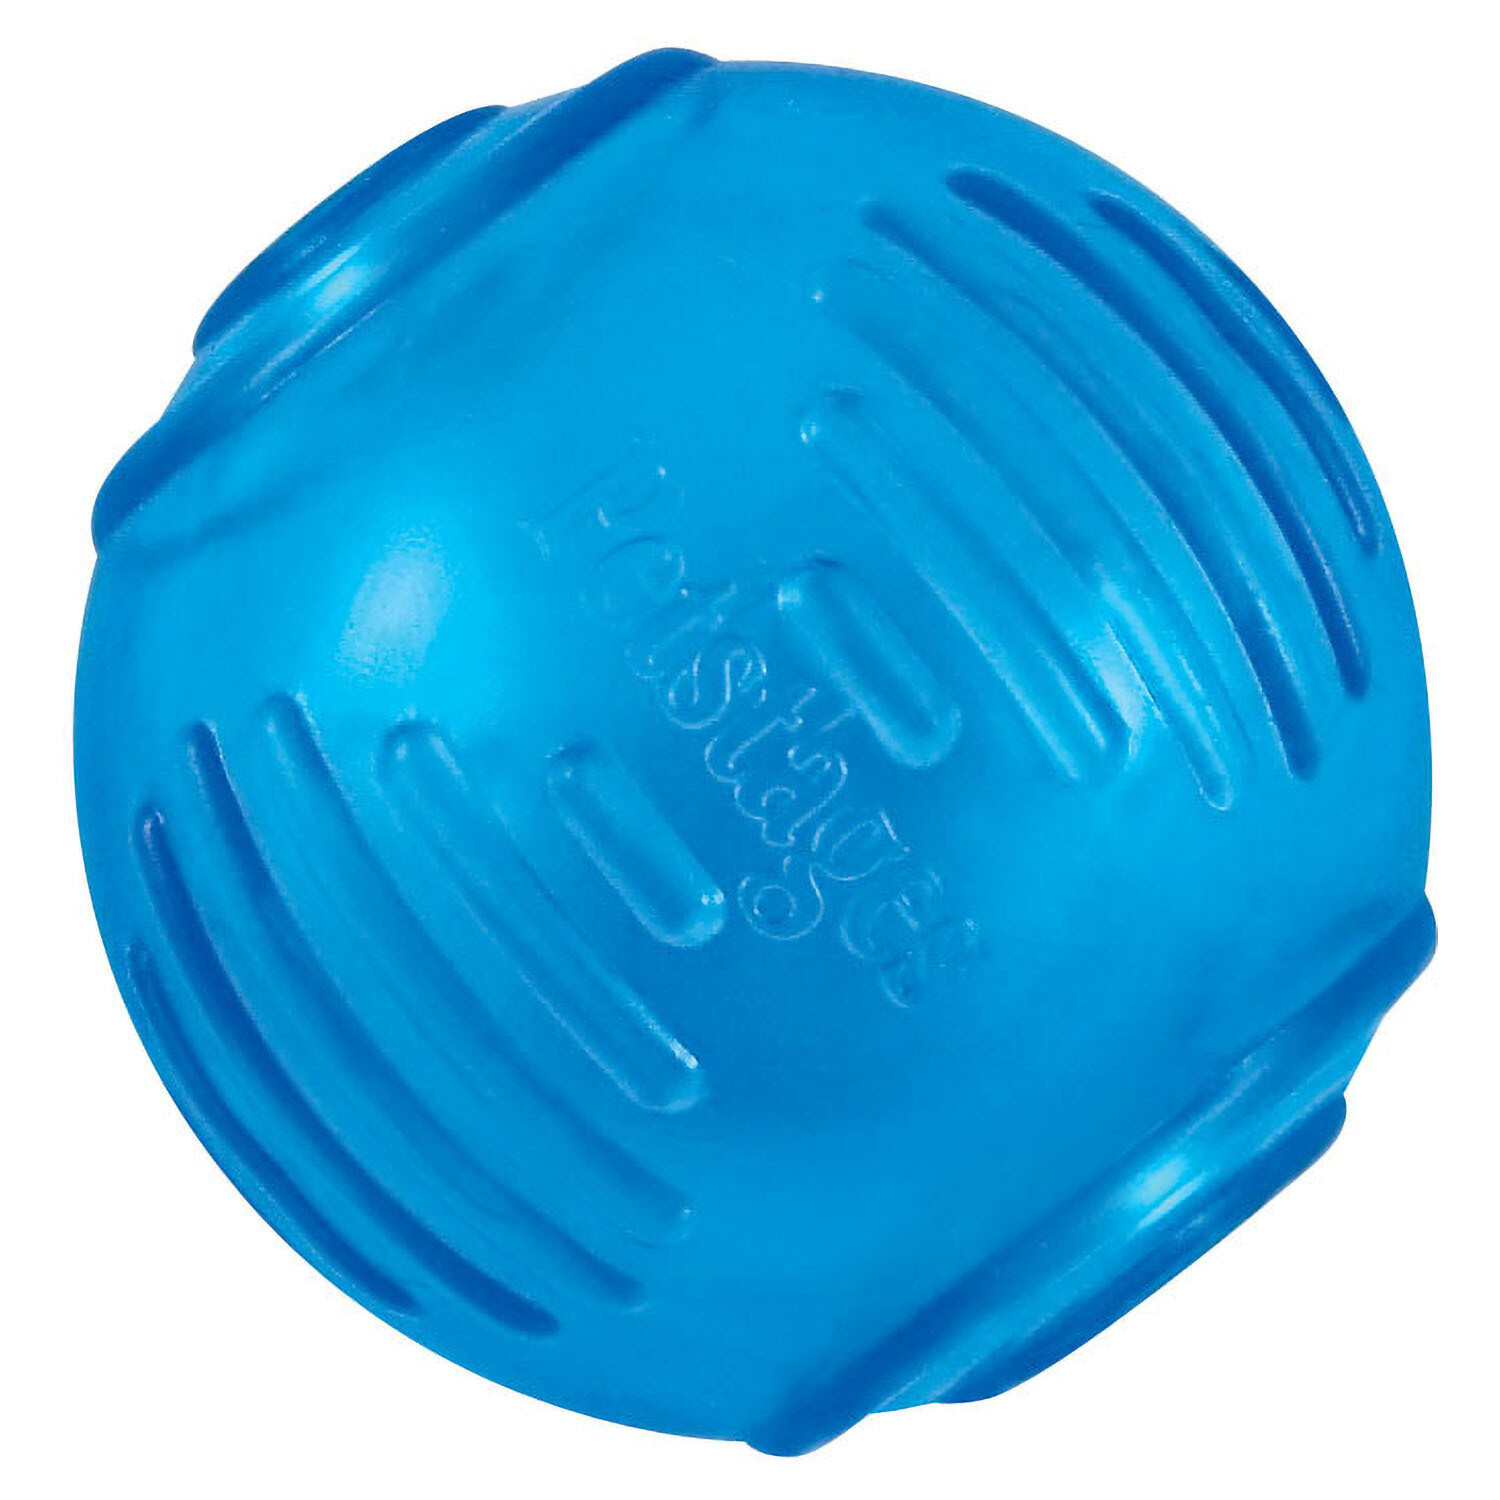 Petstages игрушка для собак "ОРКА теннисный мяч" 6 см